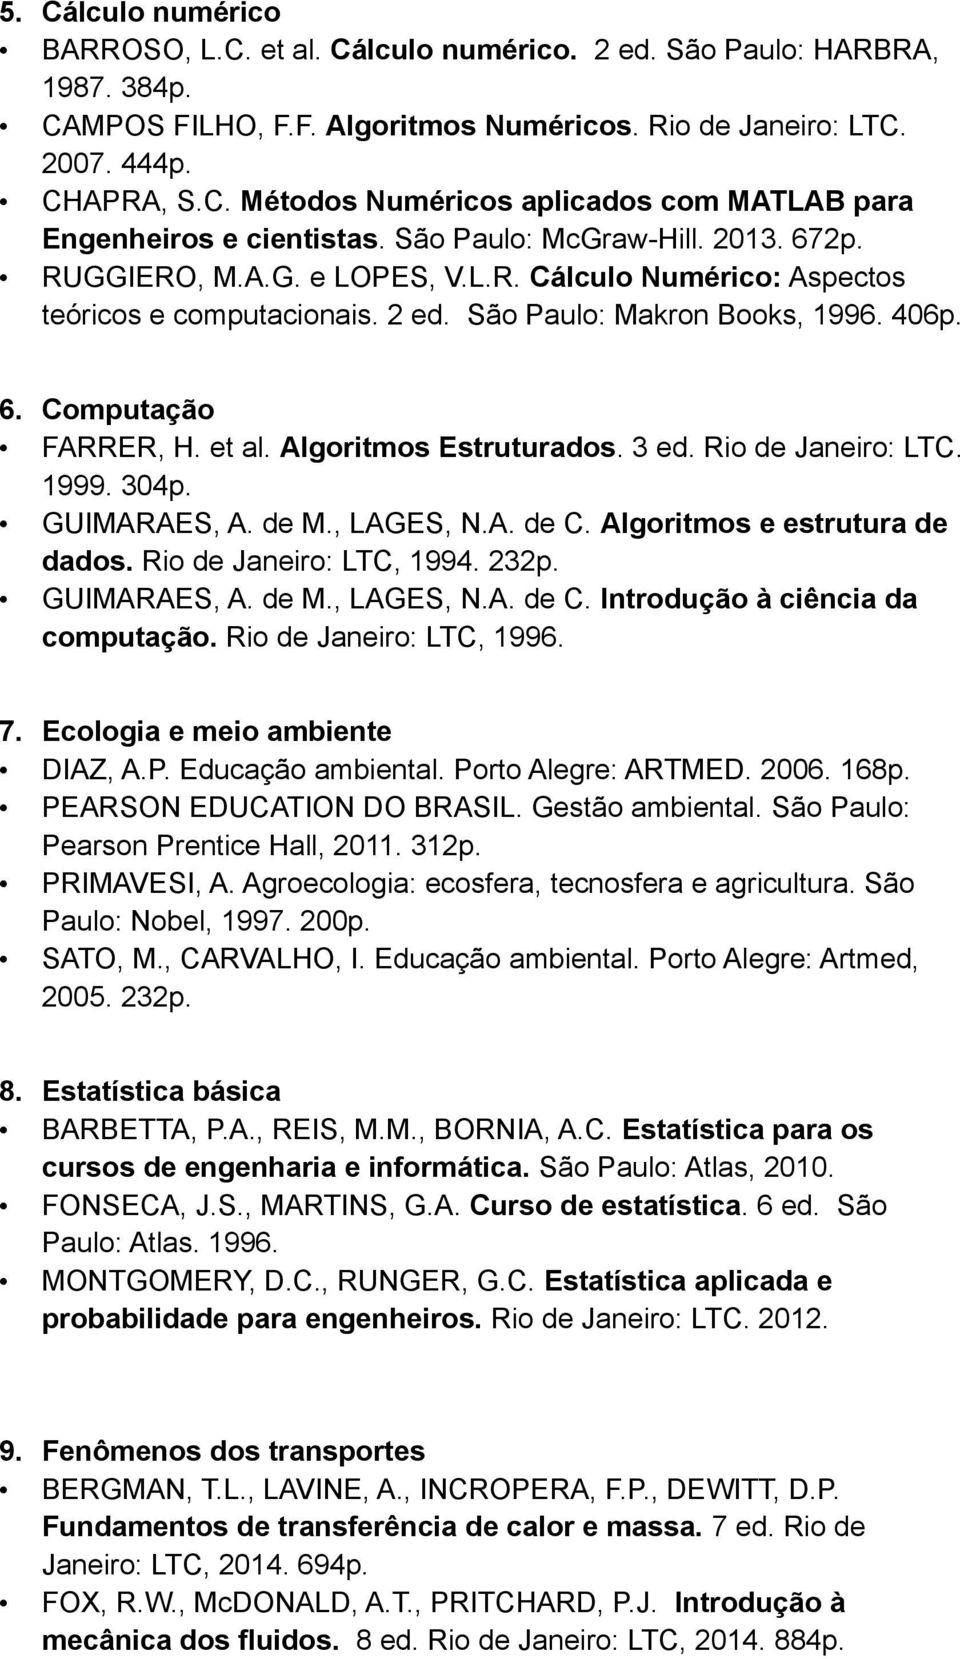 Algoritmos Estruturados. 3 ed. Rio de Janeiro: LTC. 1999. 304p. GUIMARAES, A. de M., LAGES, N.A. de C. Algoritmos e estrutura de dados. Rio de Janeiro: LTC, 1994. 232p. GUIMARAES, A. de M., LAGES, N.A. de C. Introdução à ciência da computação.